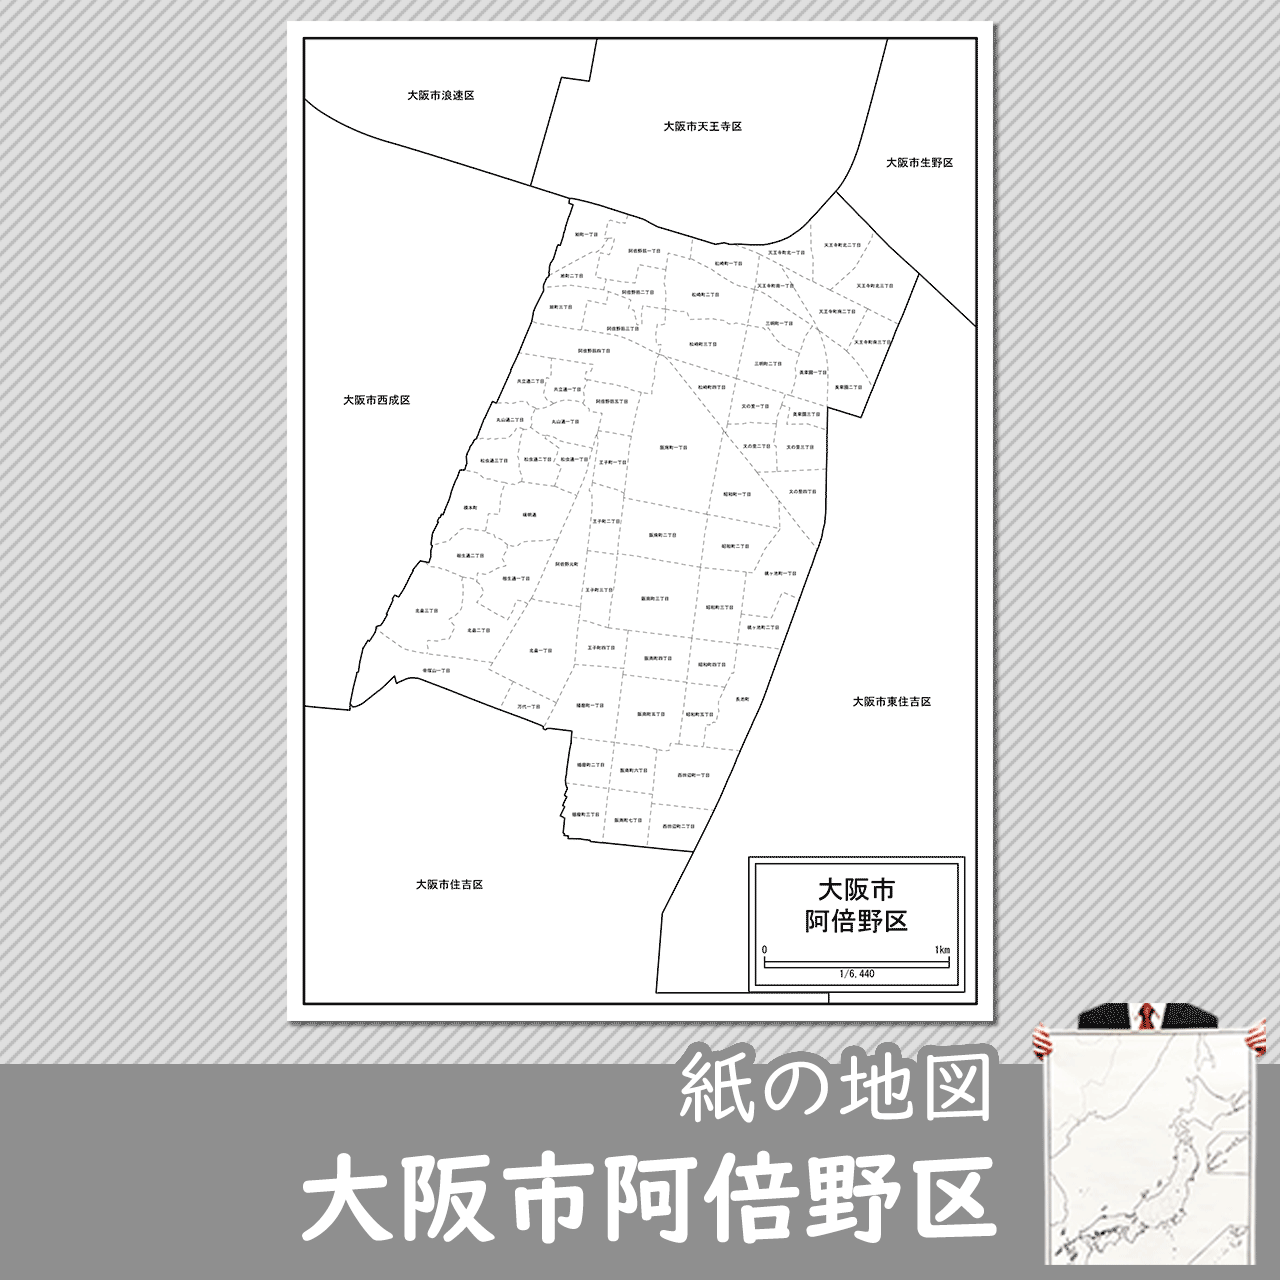 大阪市阿倍野区の紙の白地図のサムネイル